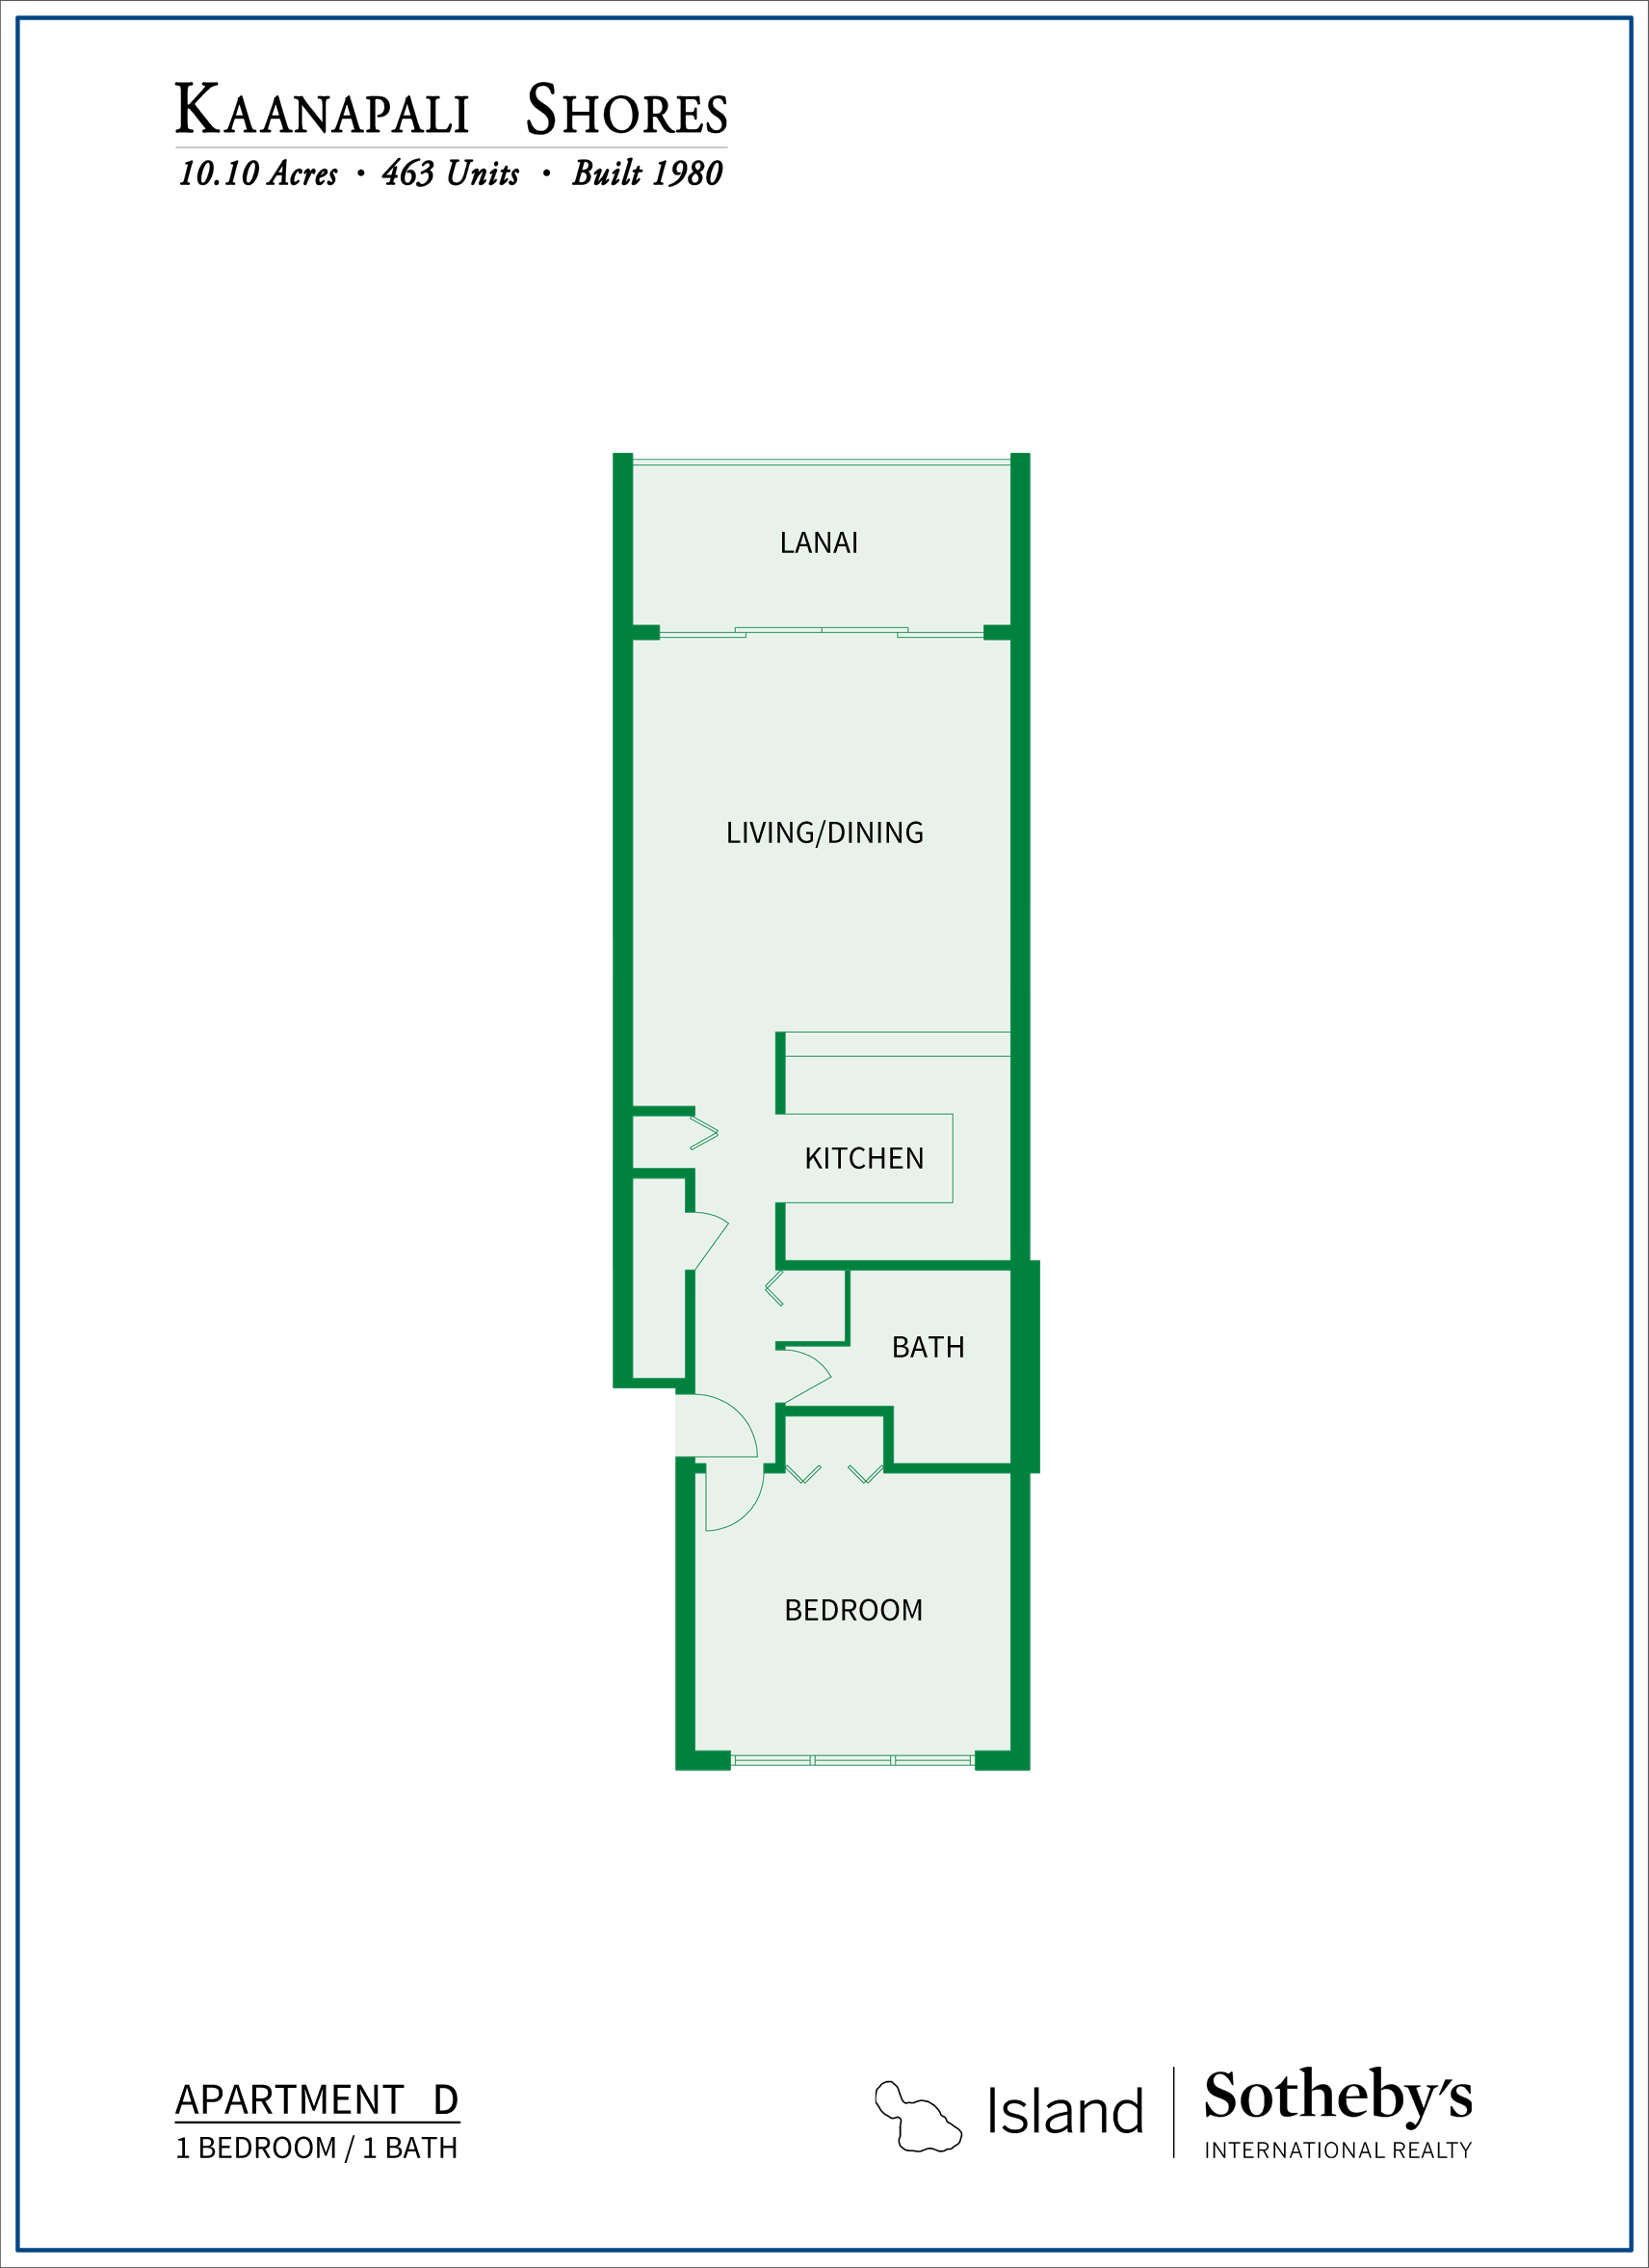 Kaanapali Shores Floor Plan D